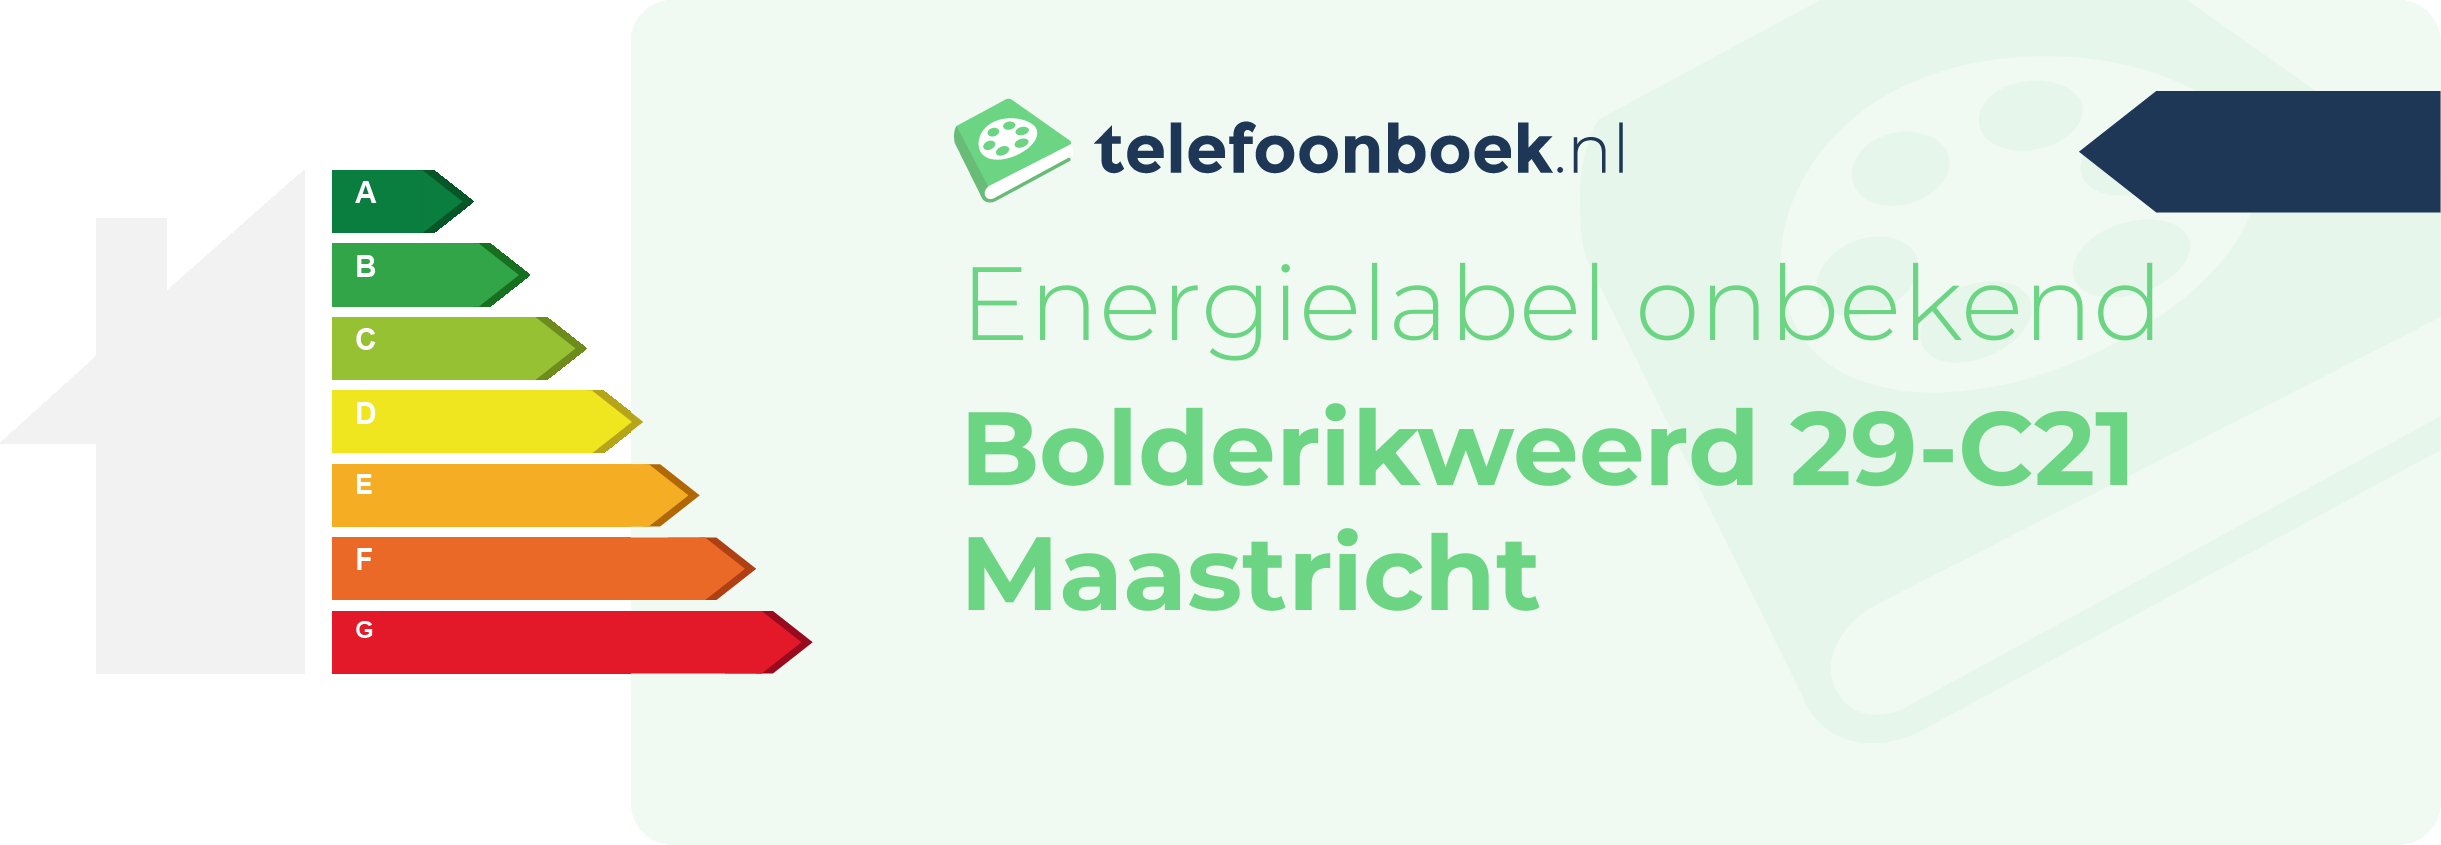 Energielabel Bolderikweerd 29-C21 Maastricht